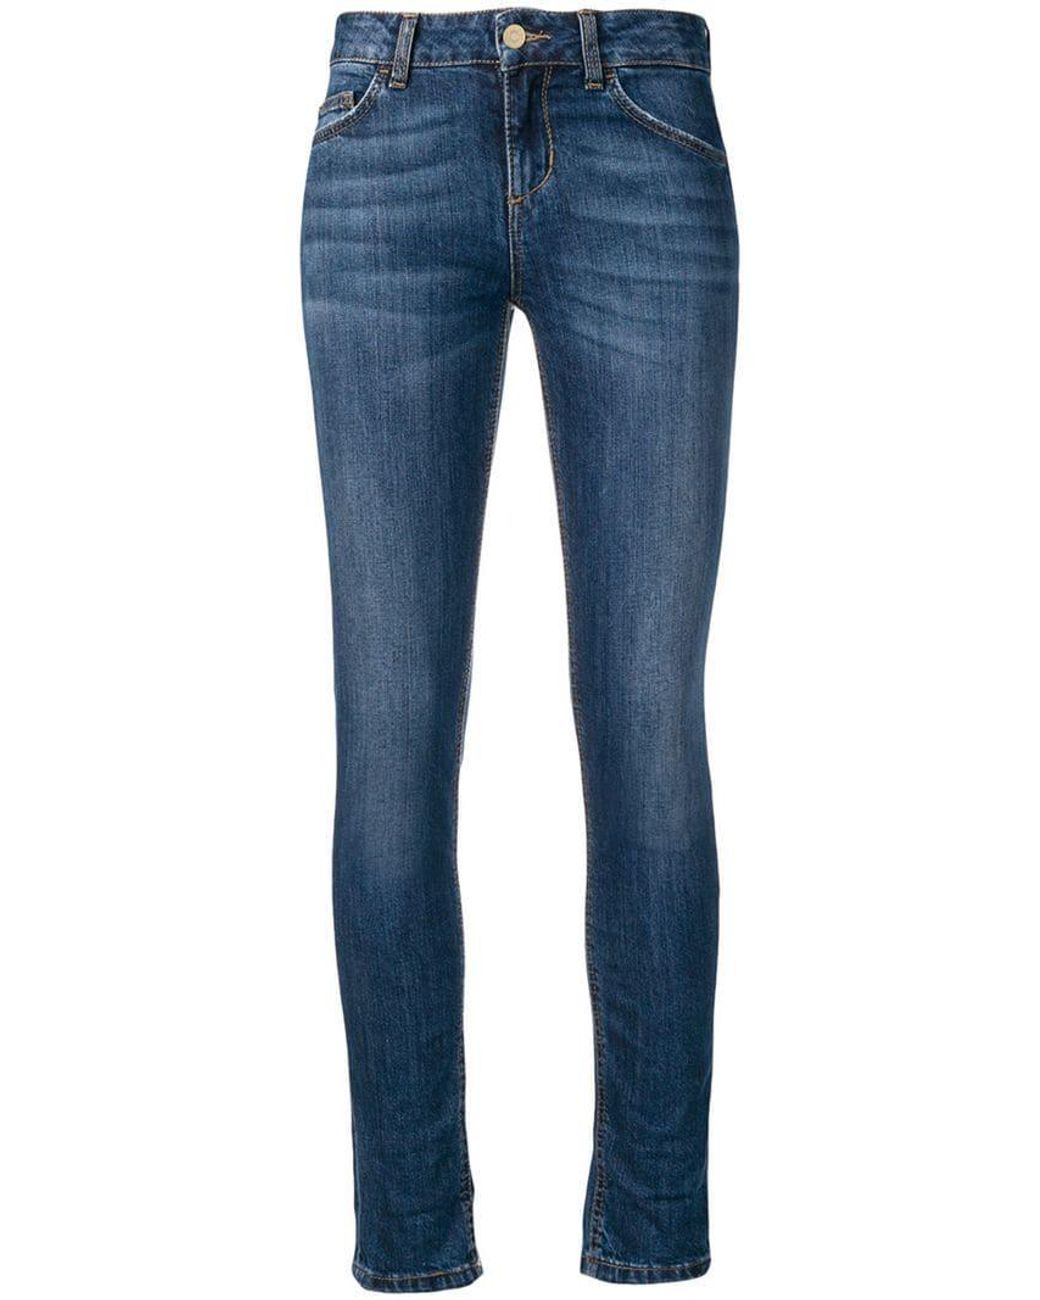 Lyst - Liu Jo Monroe Skinny Jeans in Blue